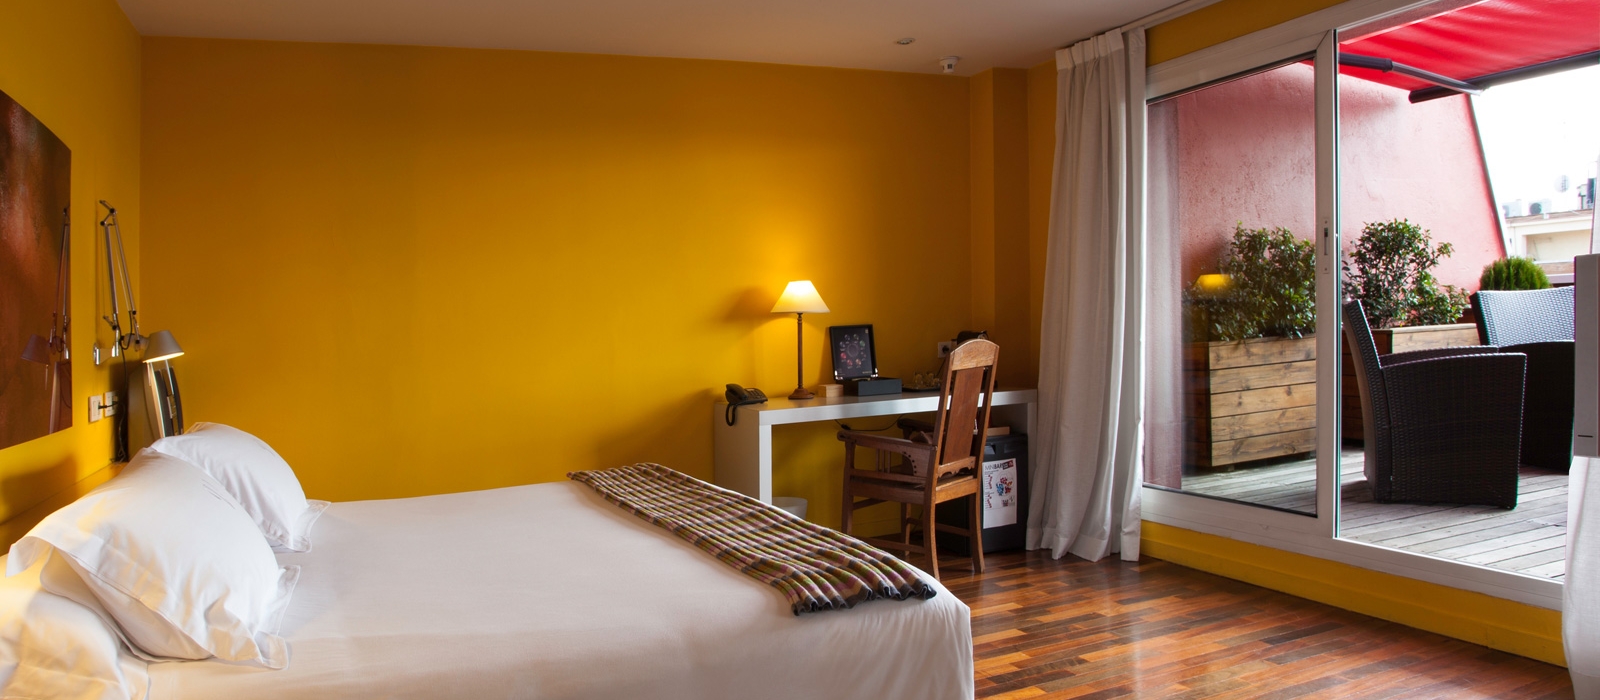 Offerte Soma Hotel Vincci Madrid - Parcheggio incluso